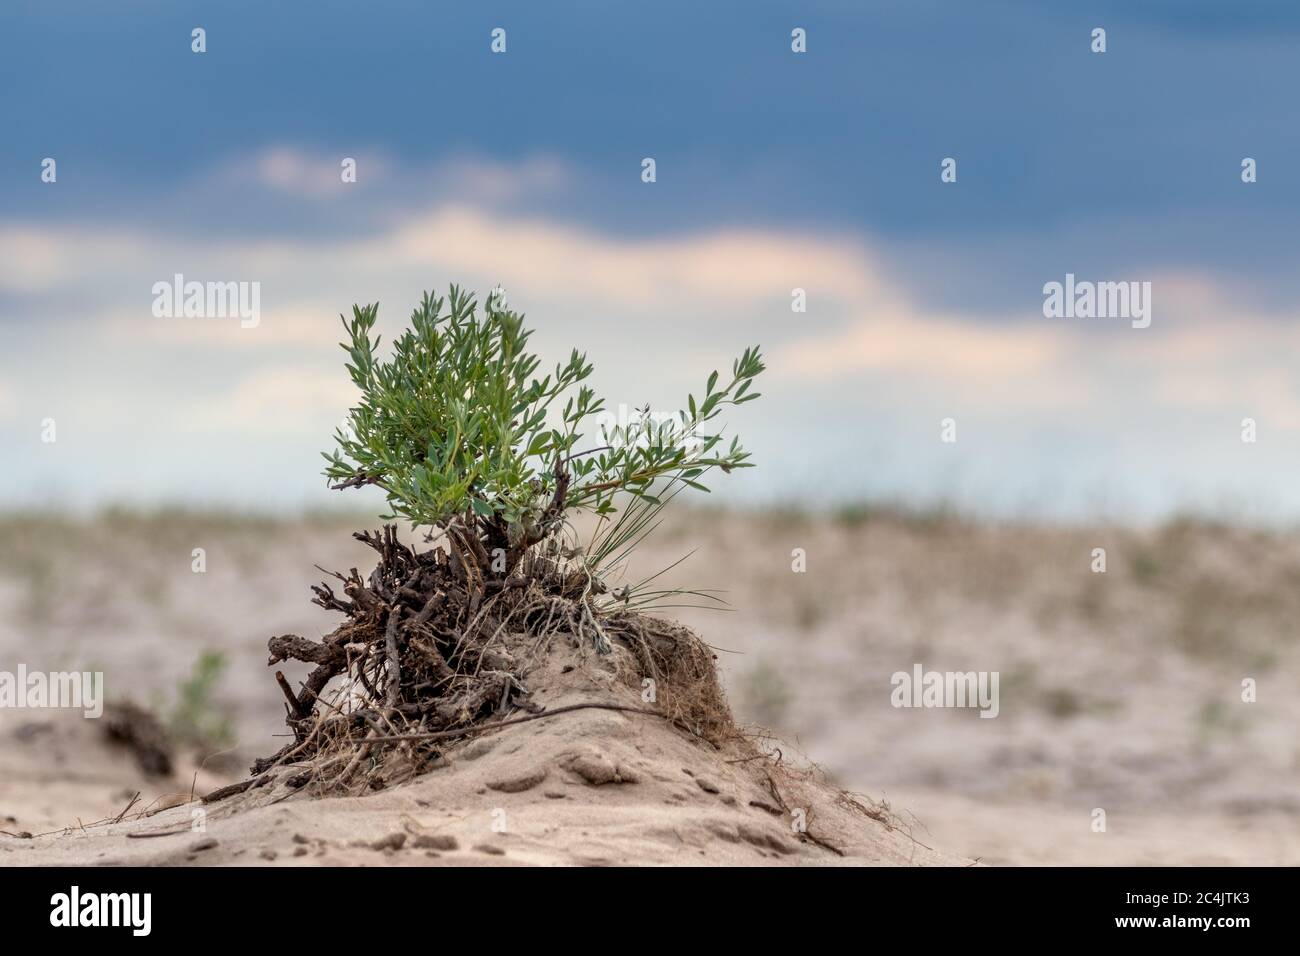 Grüner kleiner Busch im Sand mit epischem Himmel, Wüstenwachstum. Botanische wilde Nahaufnahme Natur mit dunklen Kontrast stürmischen Wolken Himmel Hintergrund Stockfoto